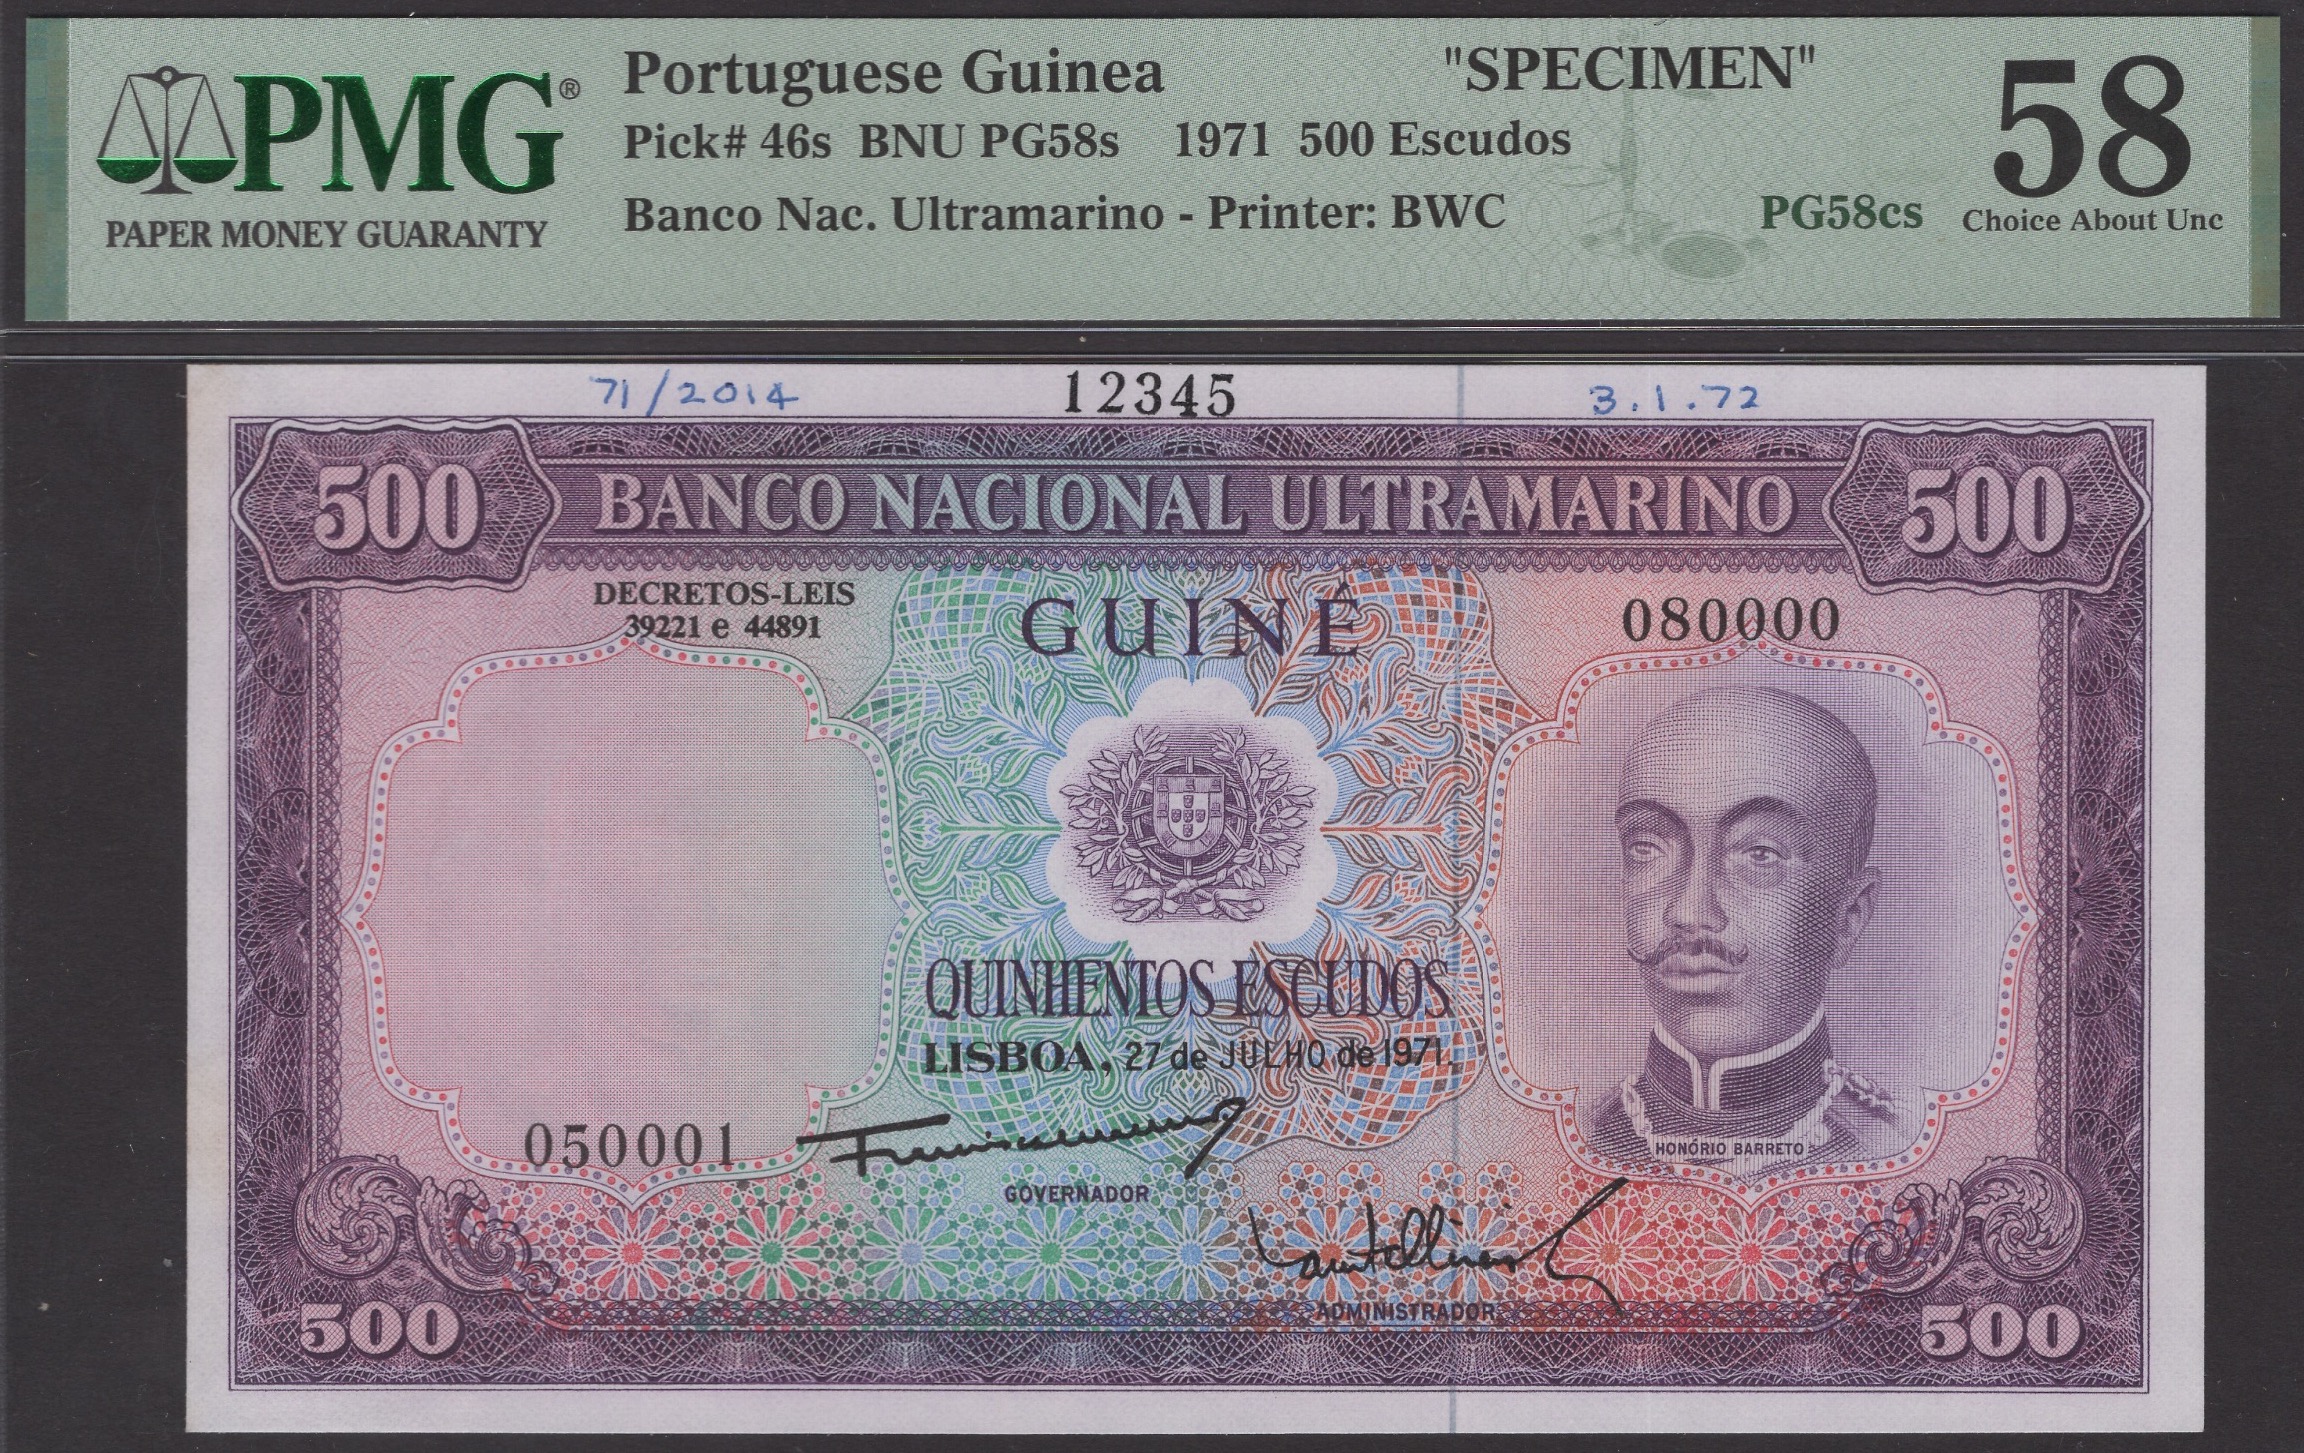 Banco Nacional Ultramarino, Portuguese Guinea, printers archival specimens for 500 Escudos... - Image 3 of 4